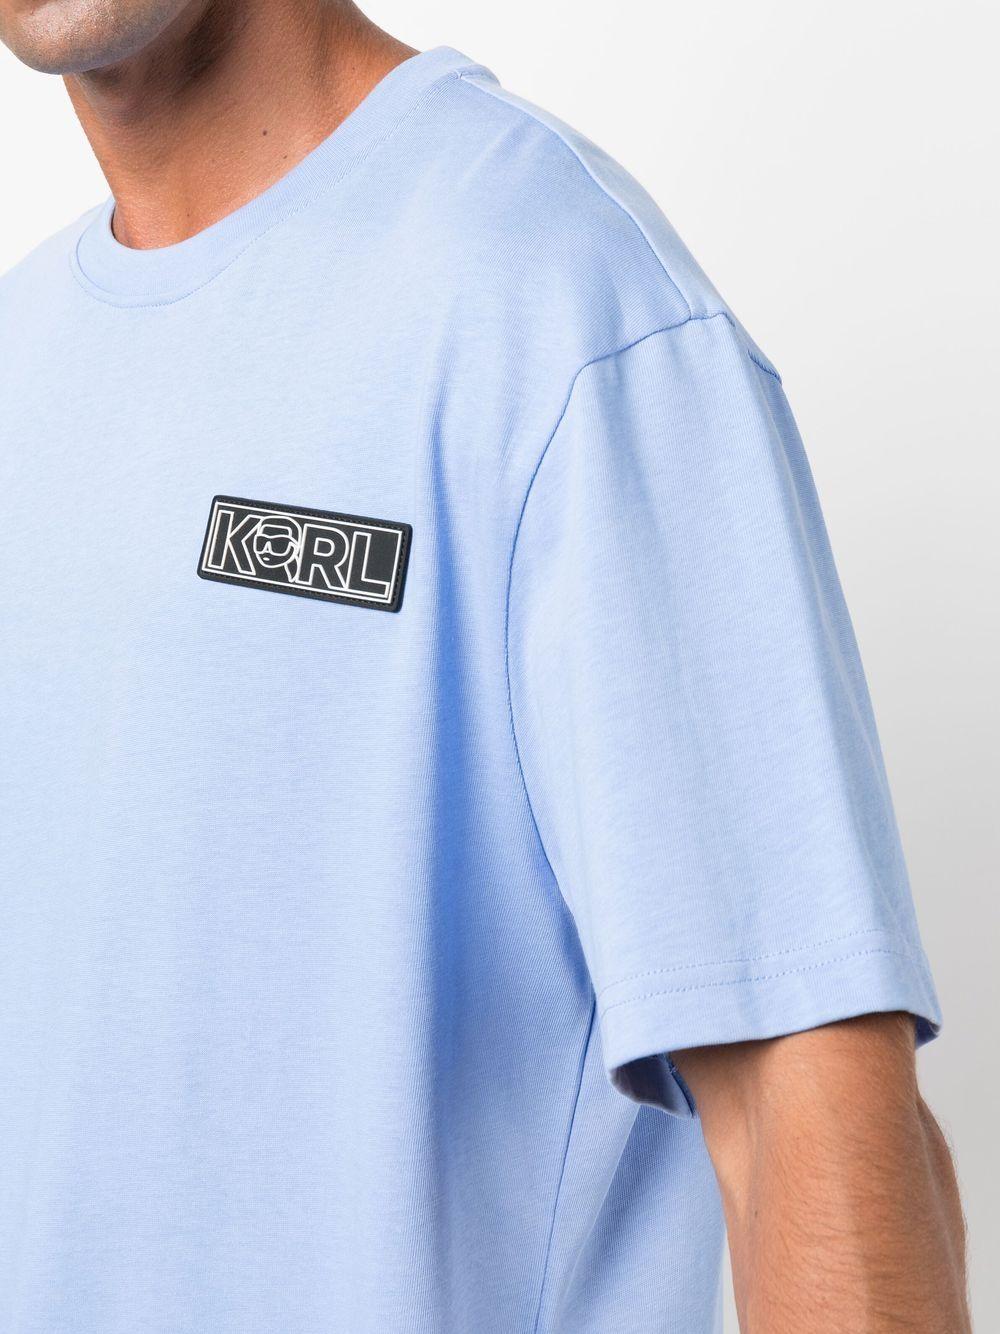 Karl Lagerfeld Ikonik 2.0 Short-sleeved T-shirt in Blue for Men | Lyst